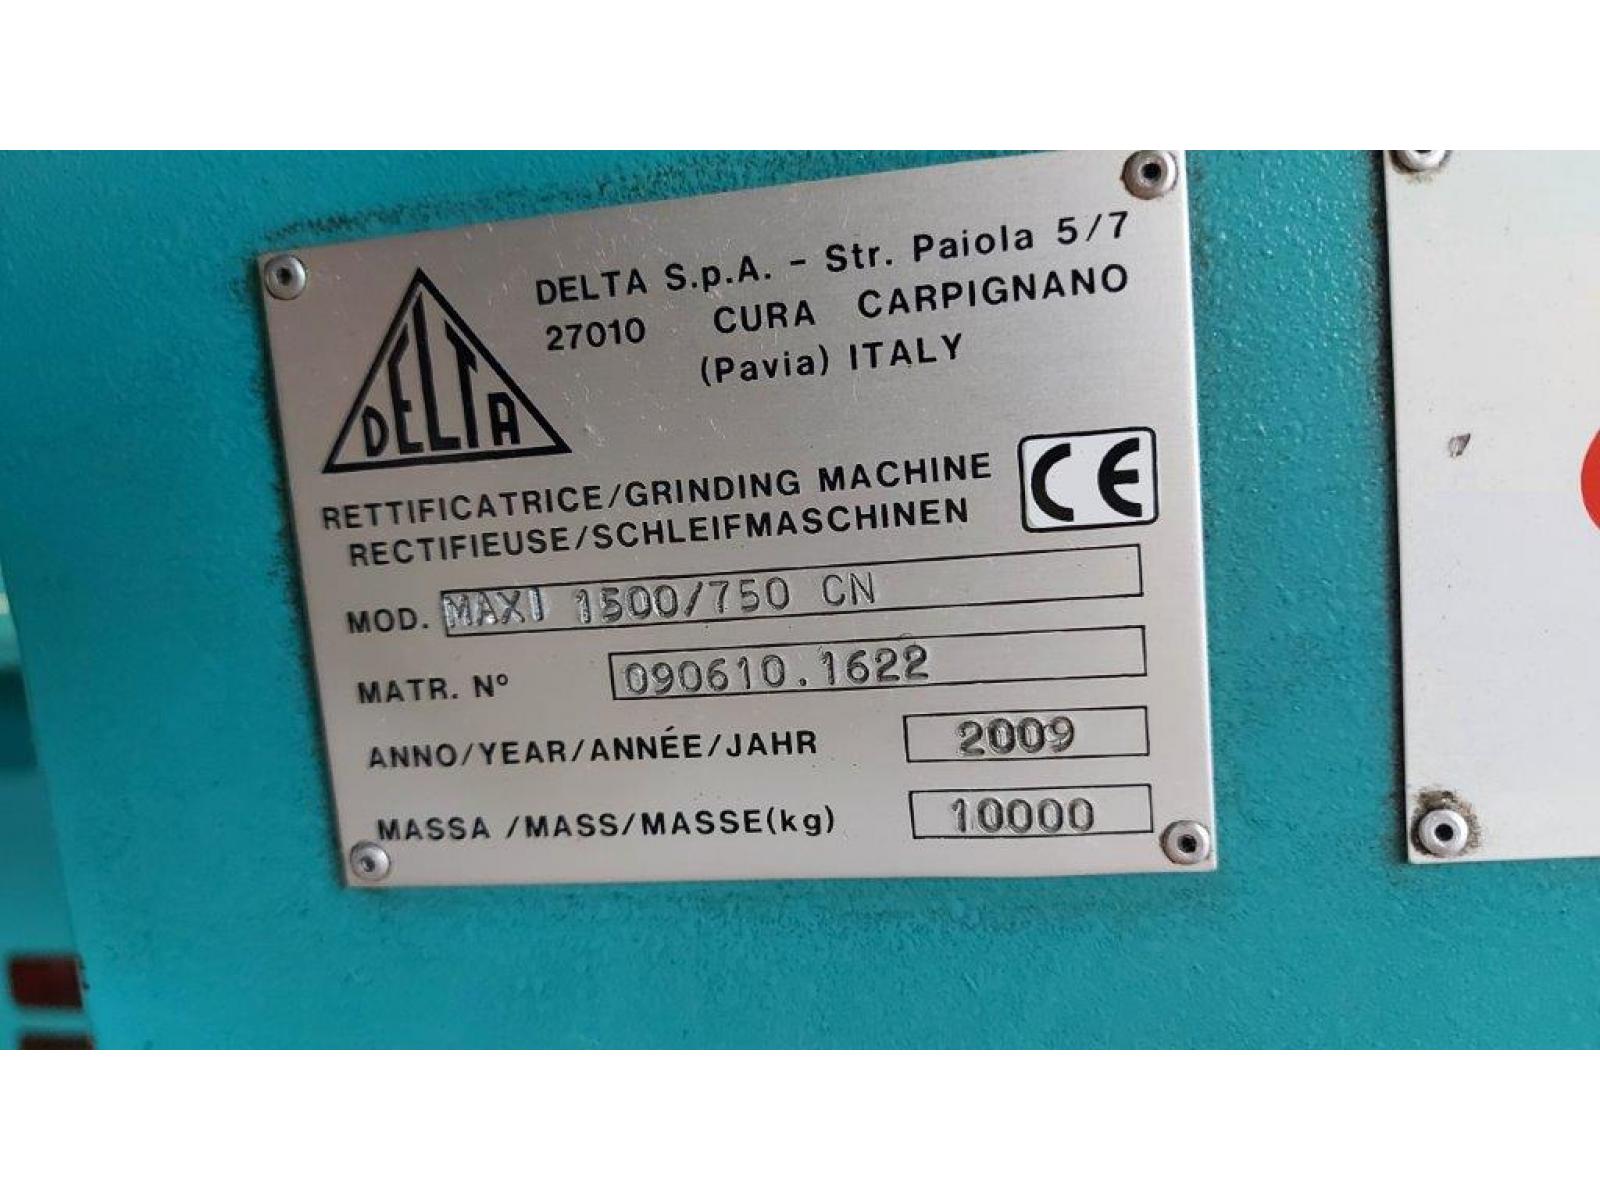 Rettifica Tangenziale Cnc DELTA Mod. MAXI 1500/750 CN,  Tavola 1700 x 600 mm